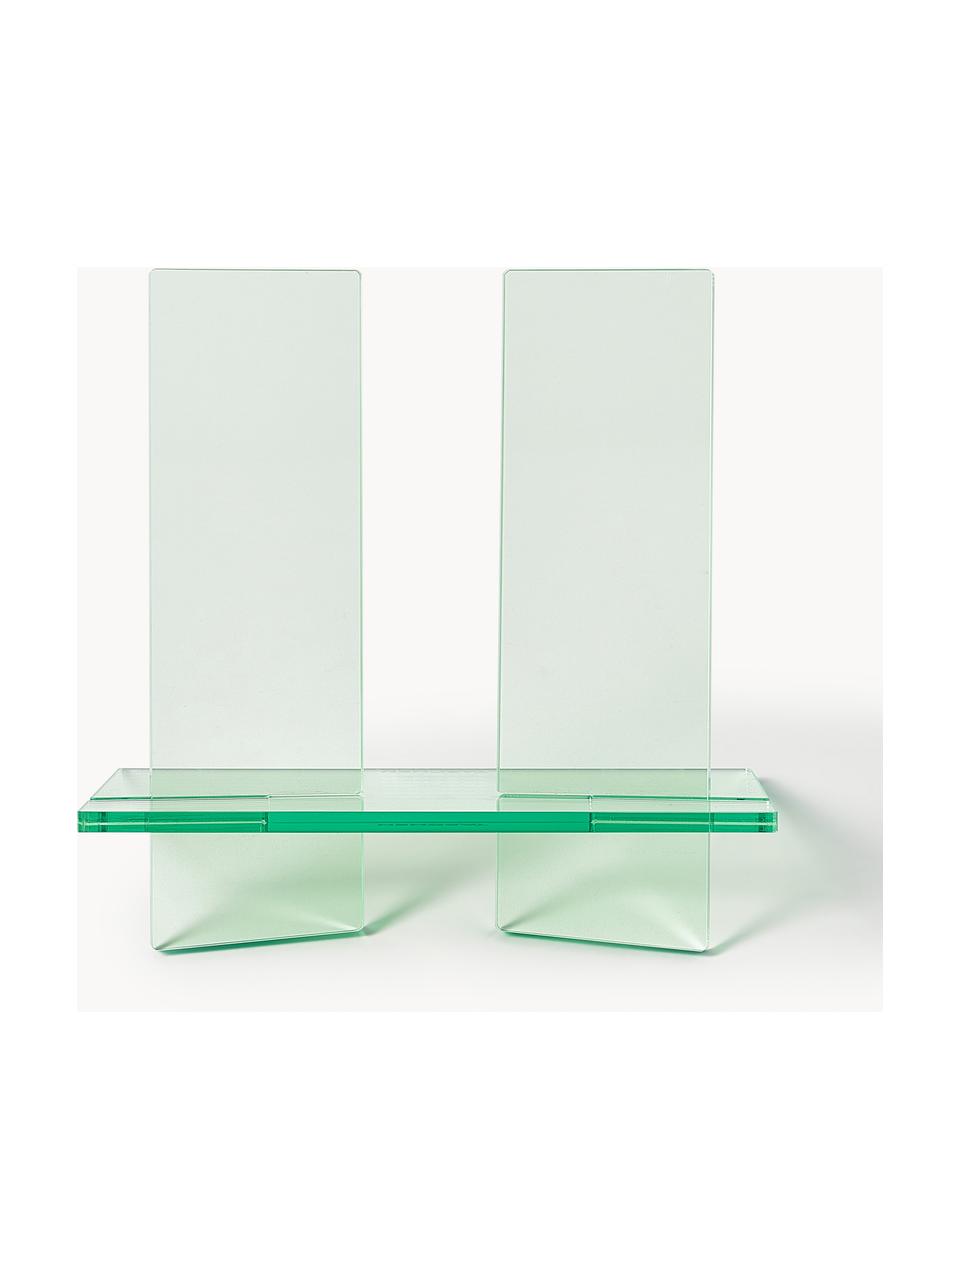 Stojak na książki Crystal, S 27 x W 25 cm, Szkło akrylowe, Jasny zielony, transparentny, S 27 x W 25 cm